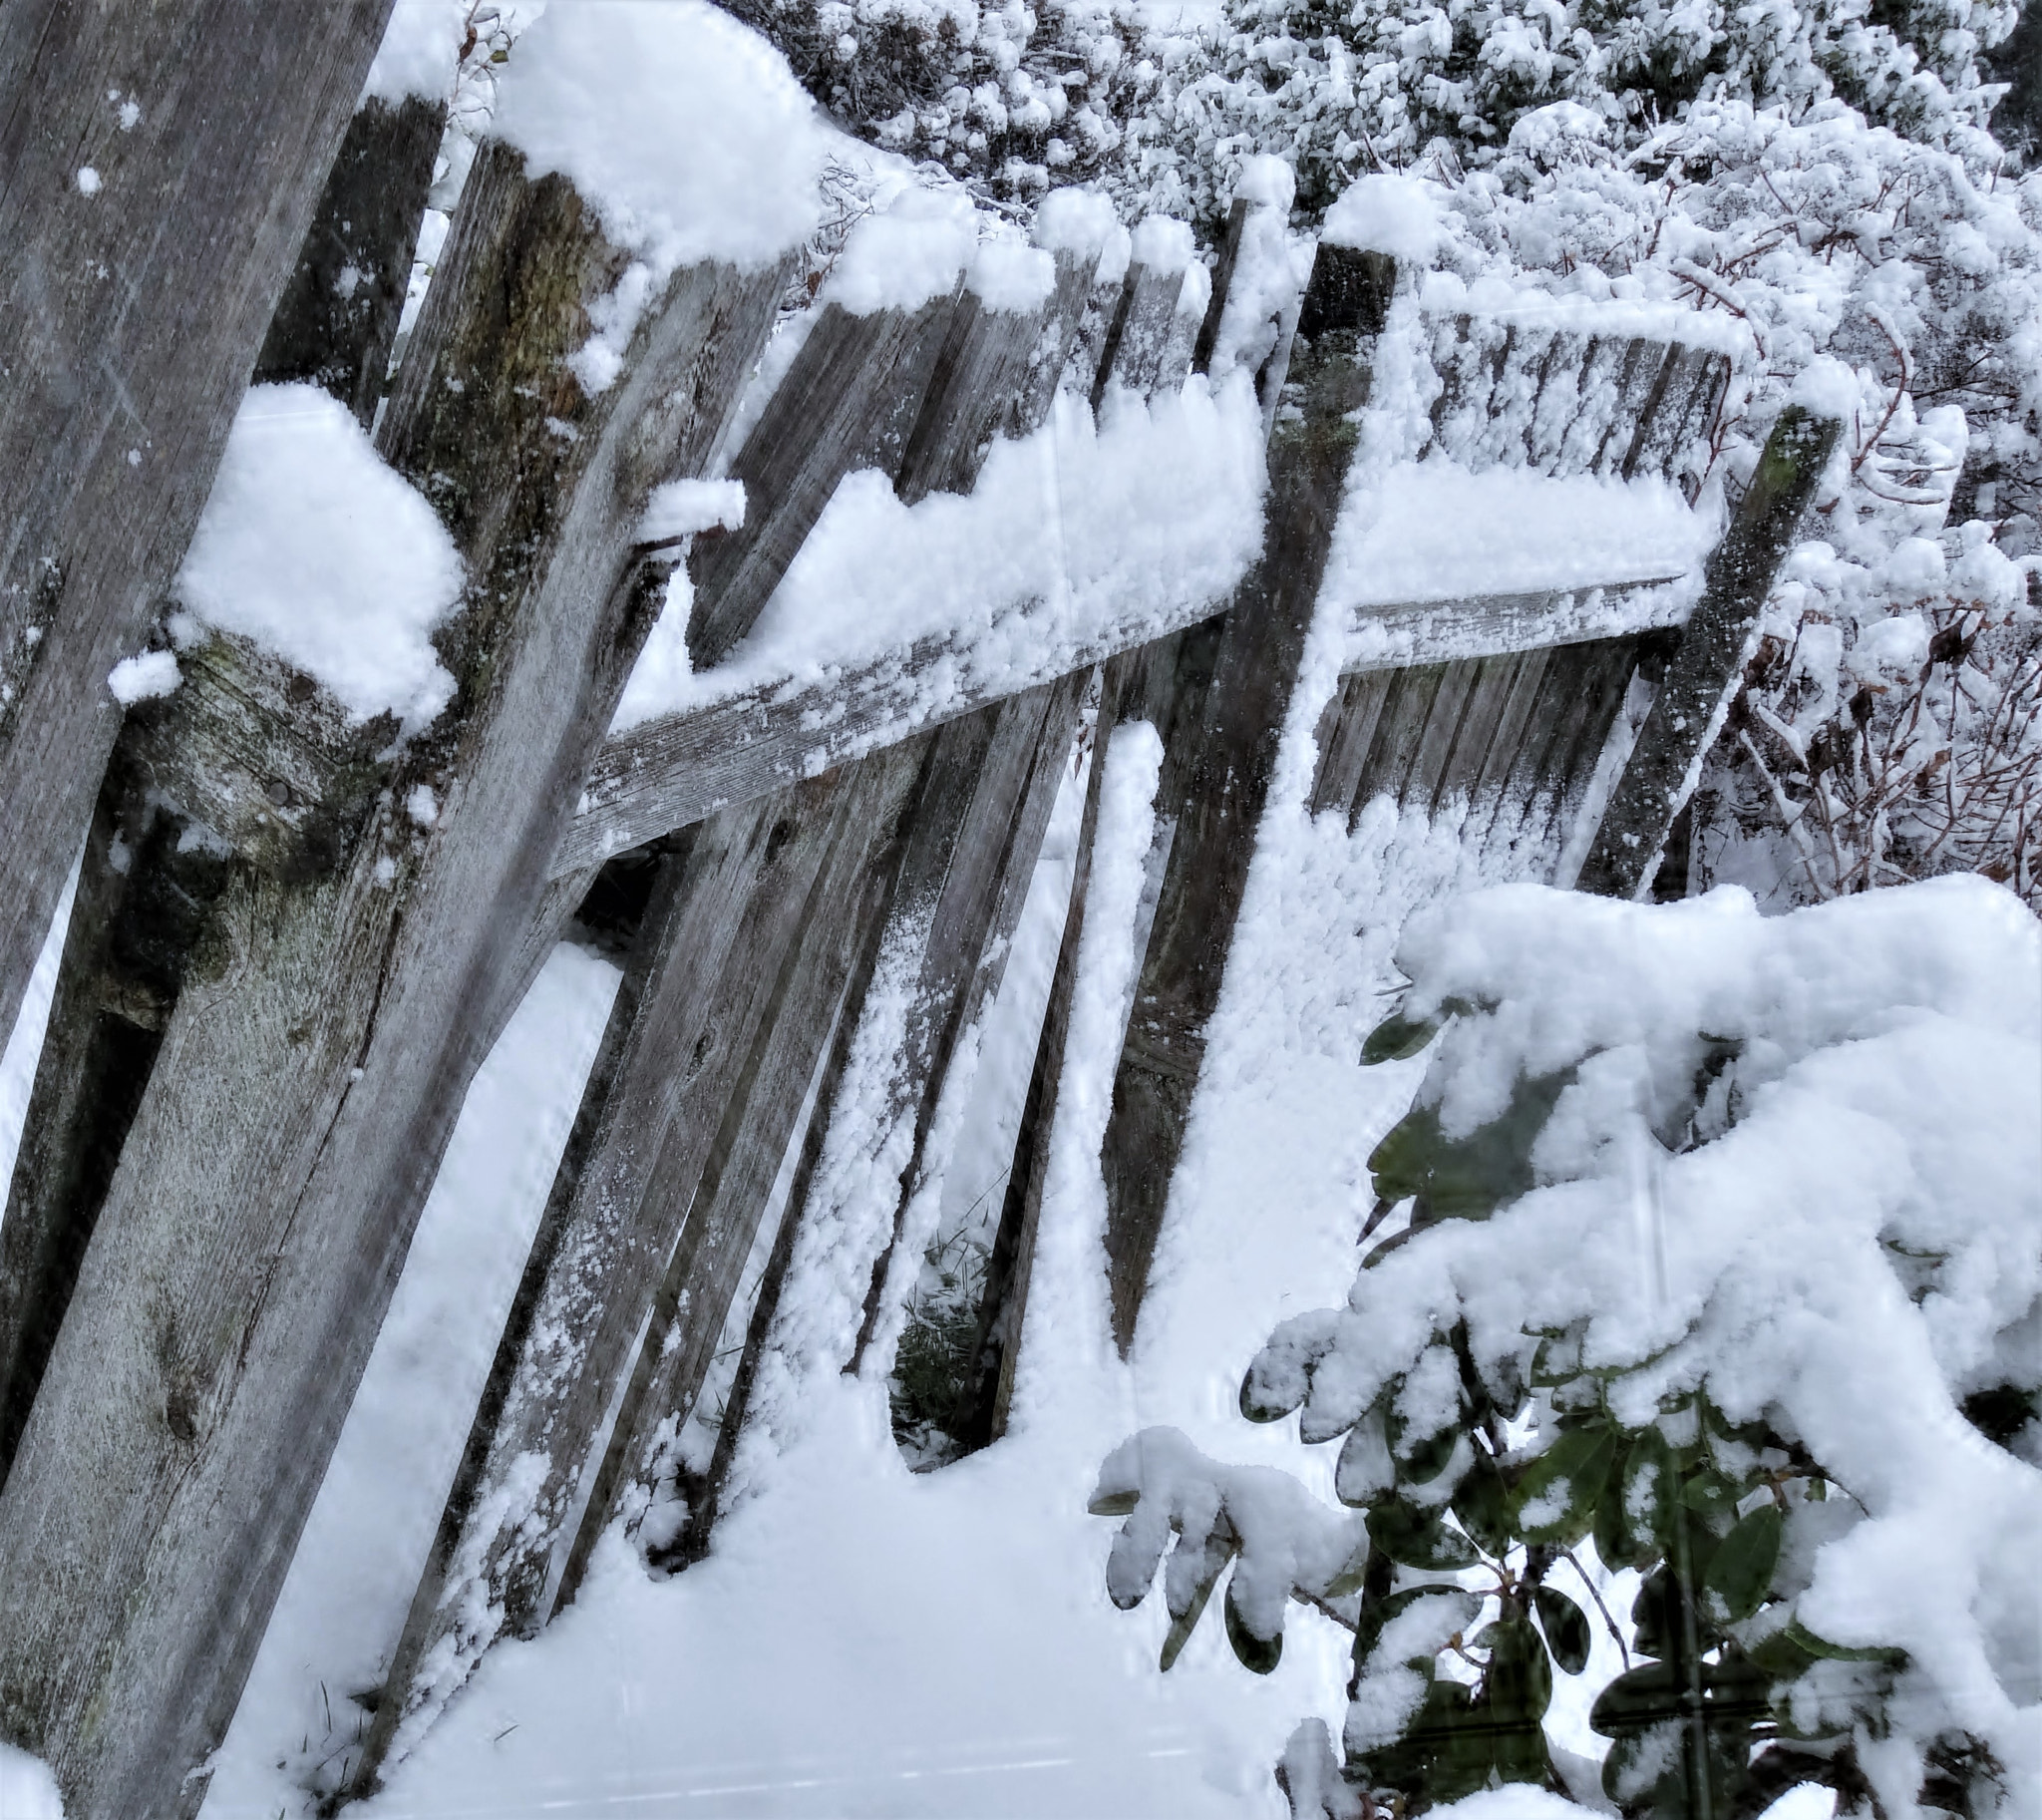 Sony Cyber-shot DSC-HX30V sample photo. Snow on fence photography